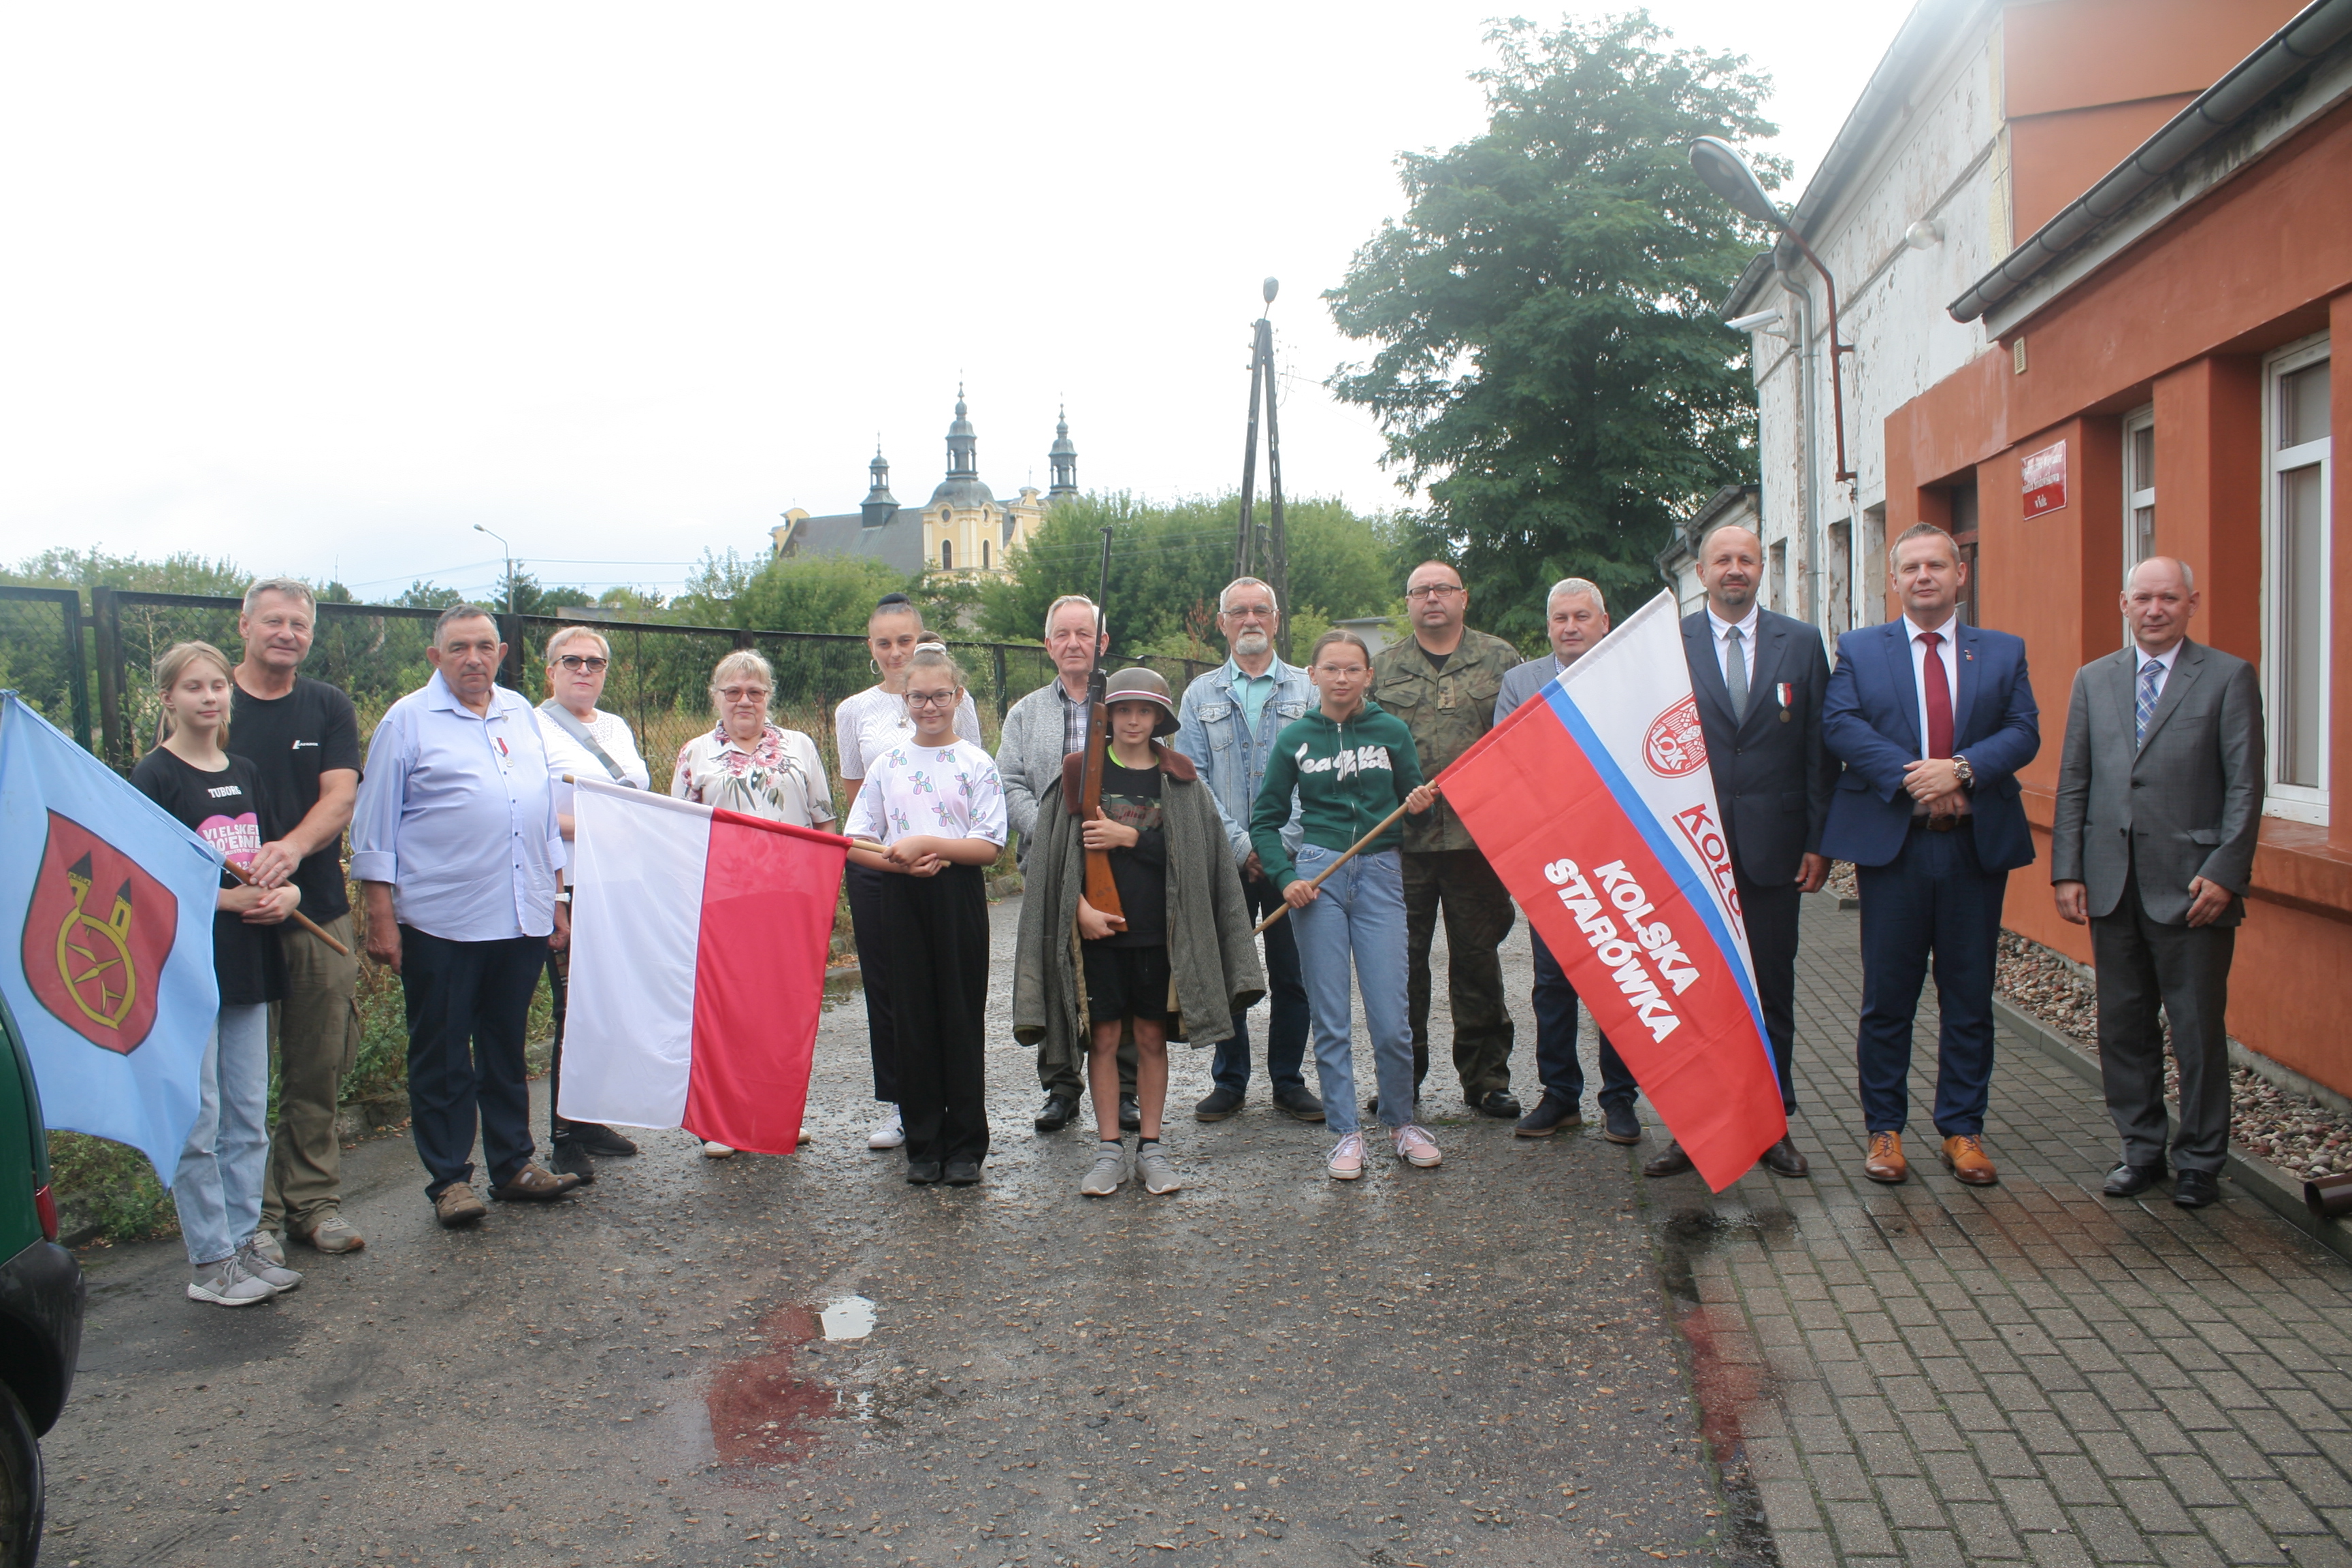 Burmistrz Koła Krzysztof Witkowski z uczestnikami spotkania w Klubie LOK „Kolska Starówka” w Kole 